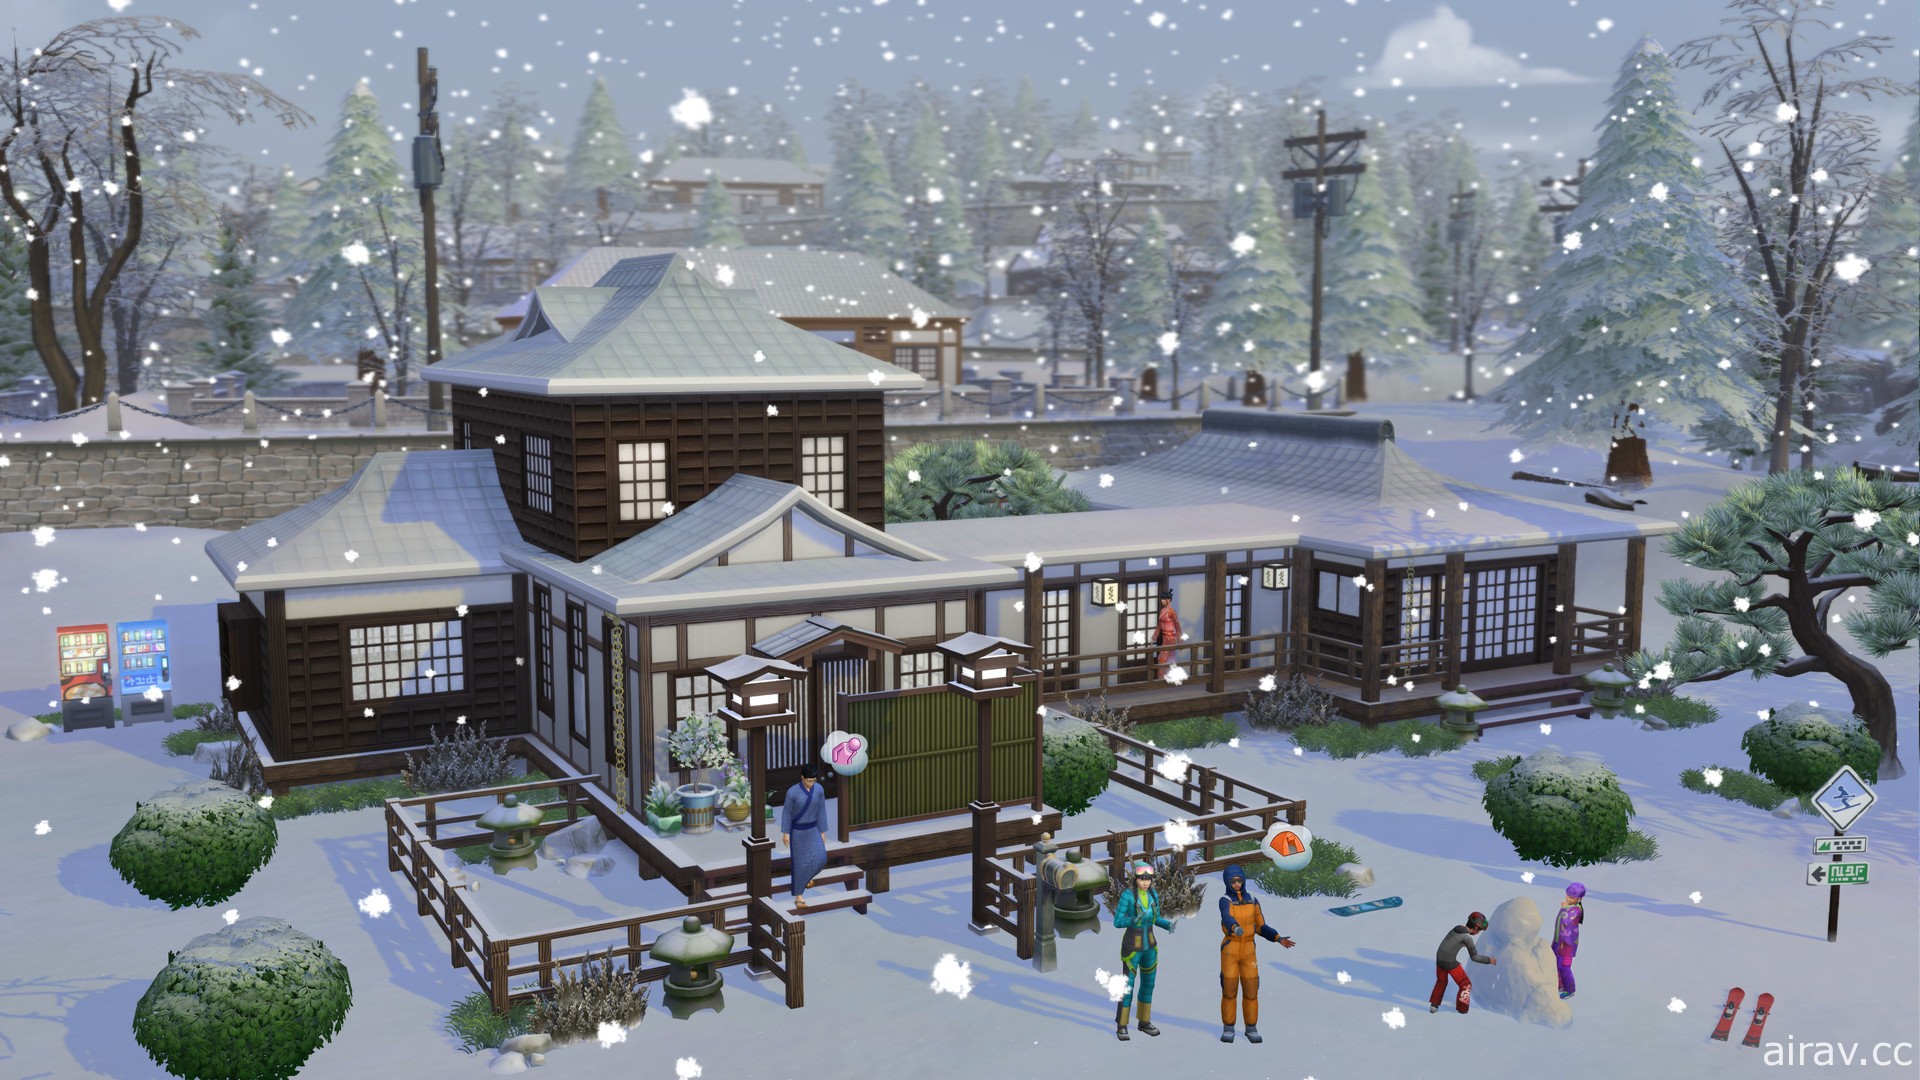 《模擬市民 4》新資料片《雪國勝地》11 月上市 打造日本風住家、享受雪上運動